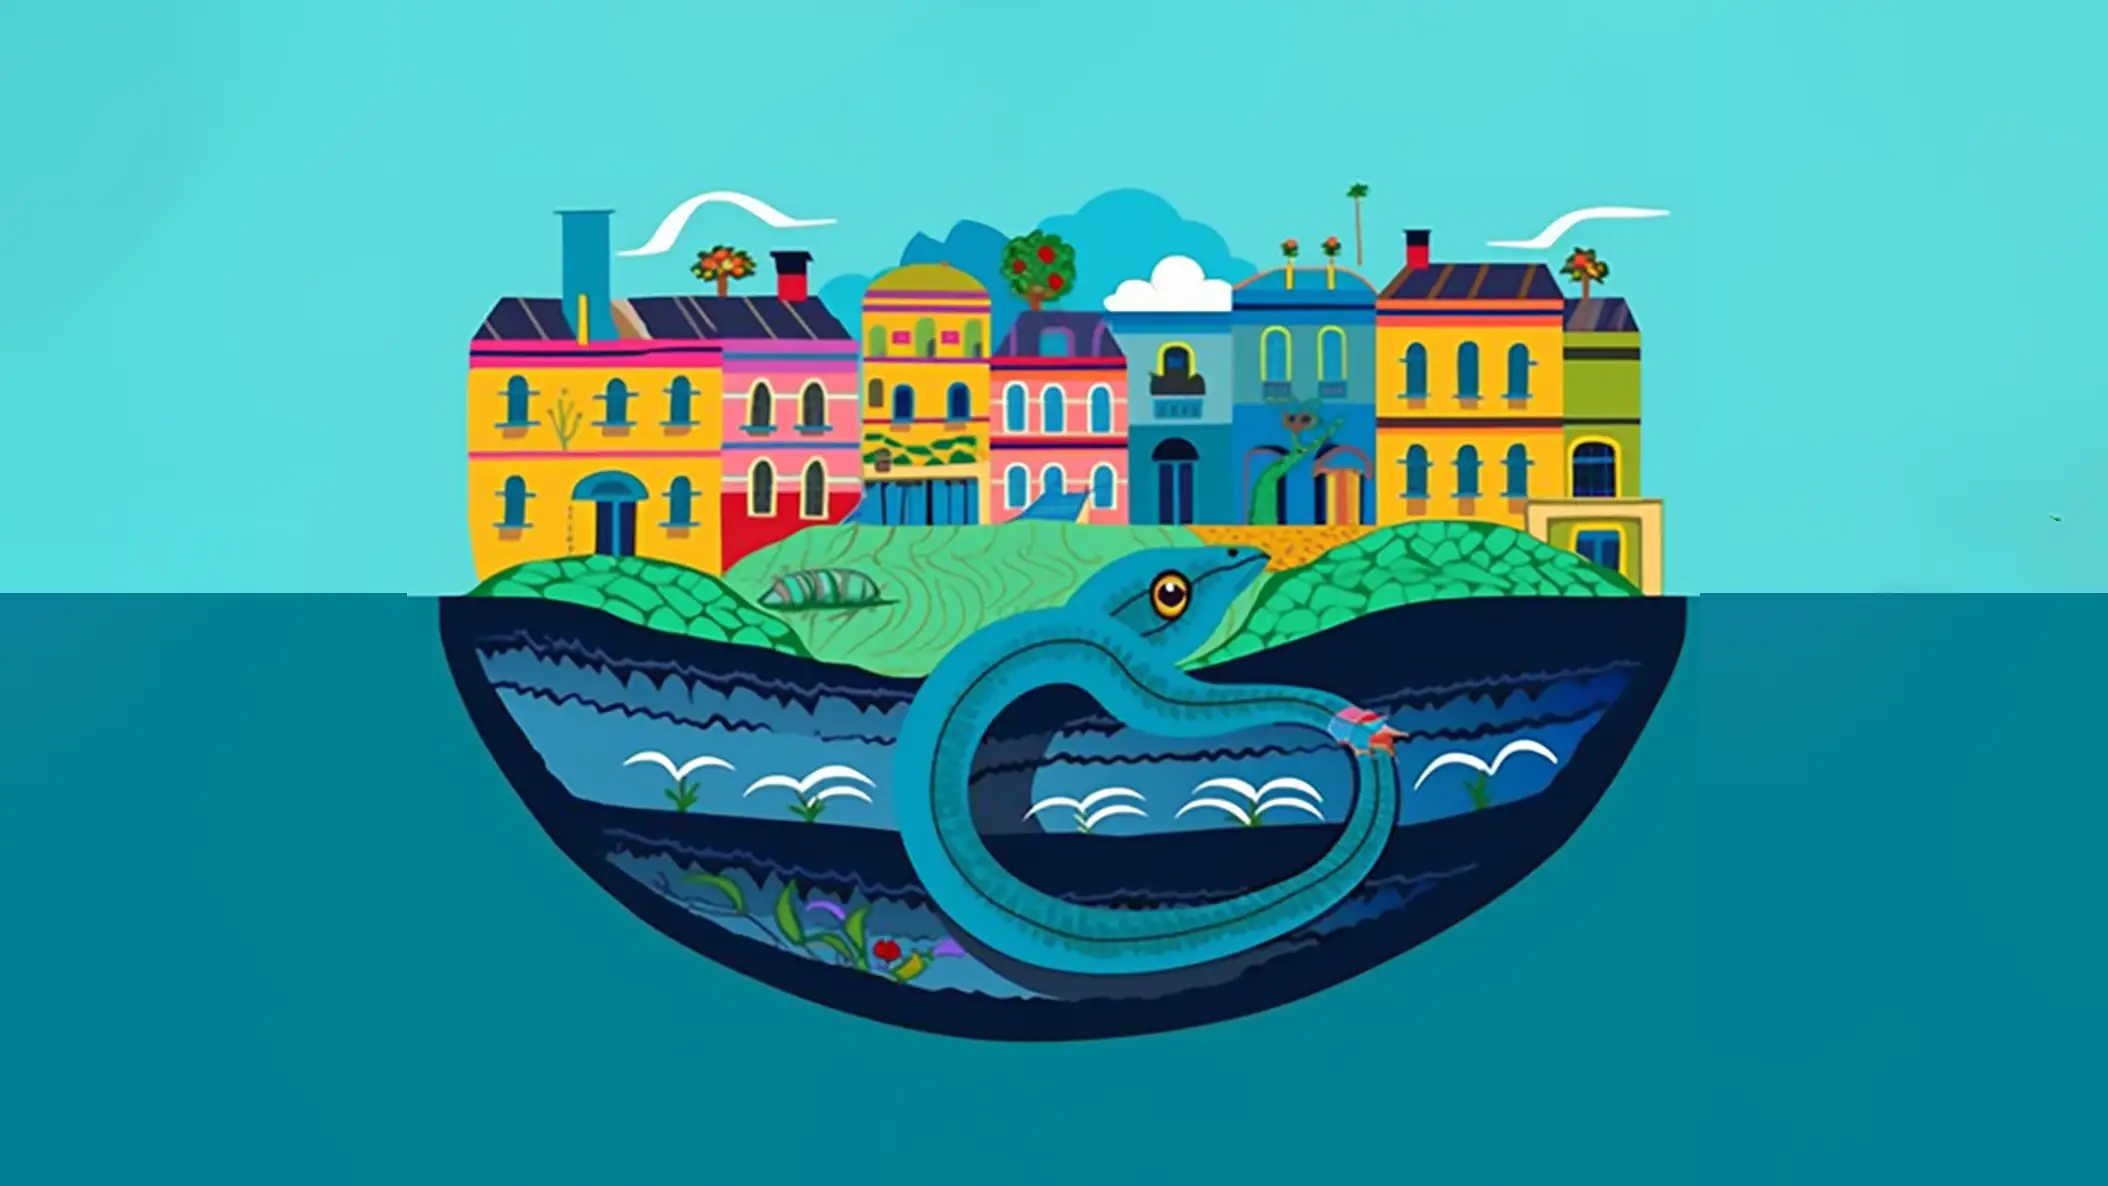 Ilustração inspirada na lenda da serpente encantada de São Luís do Maranhão